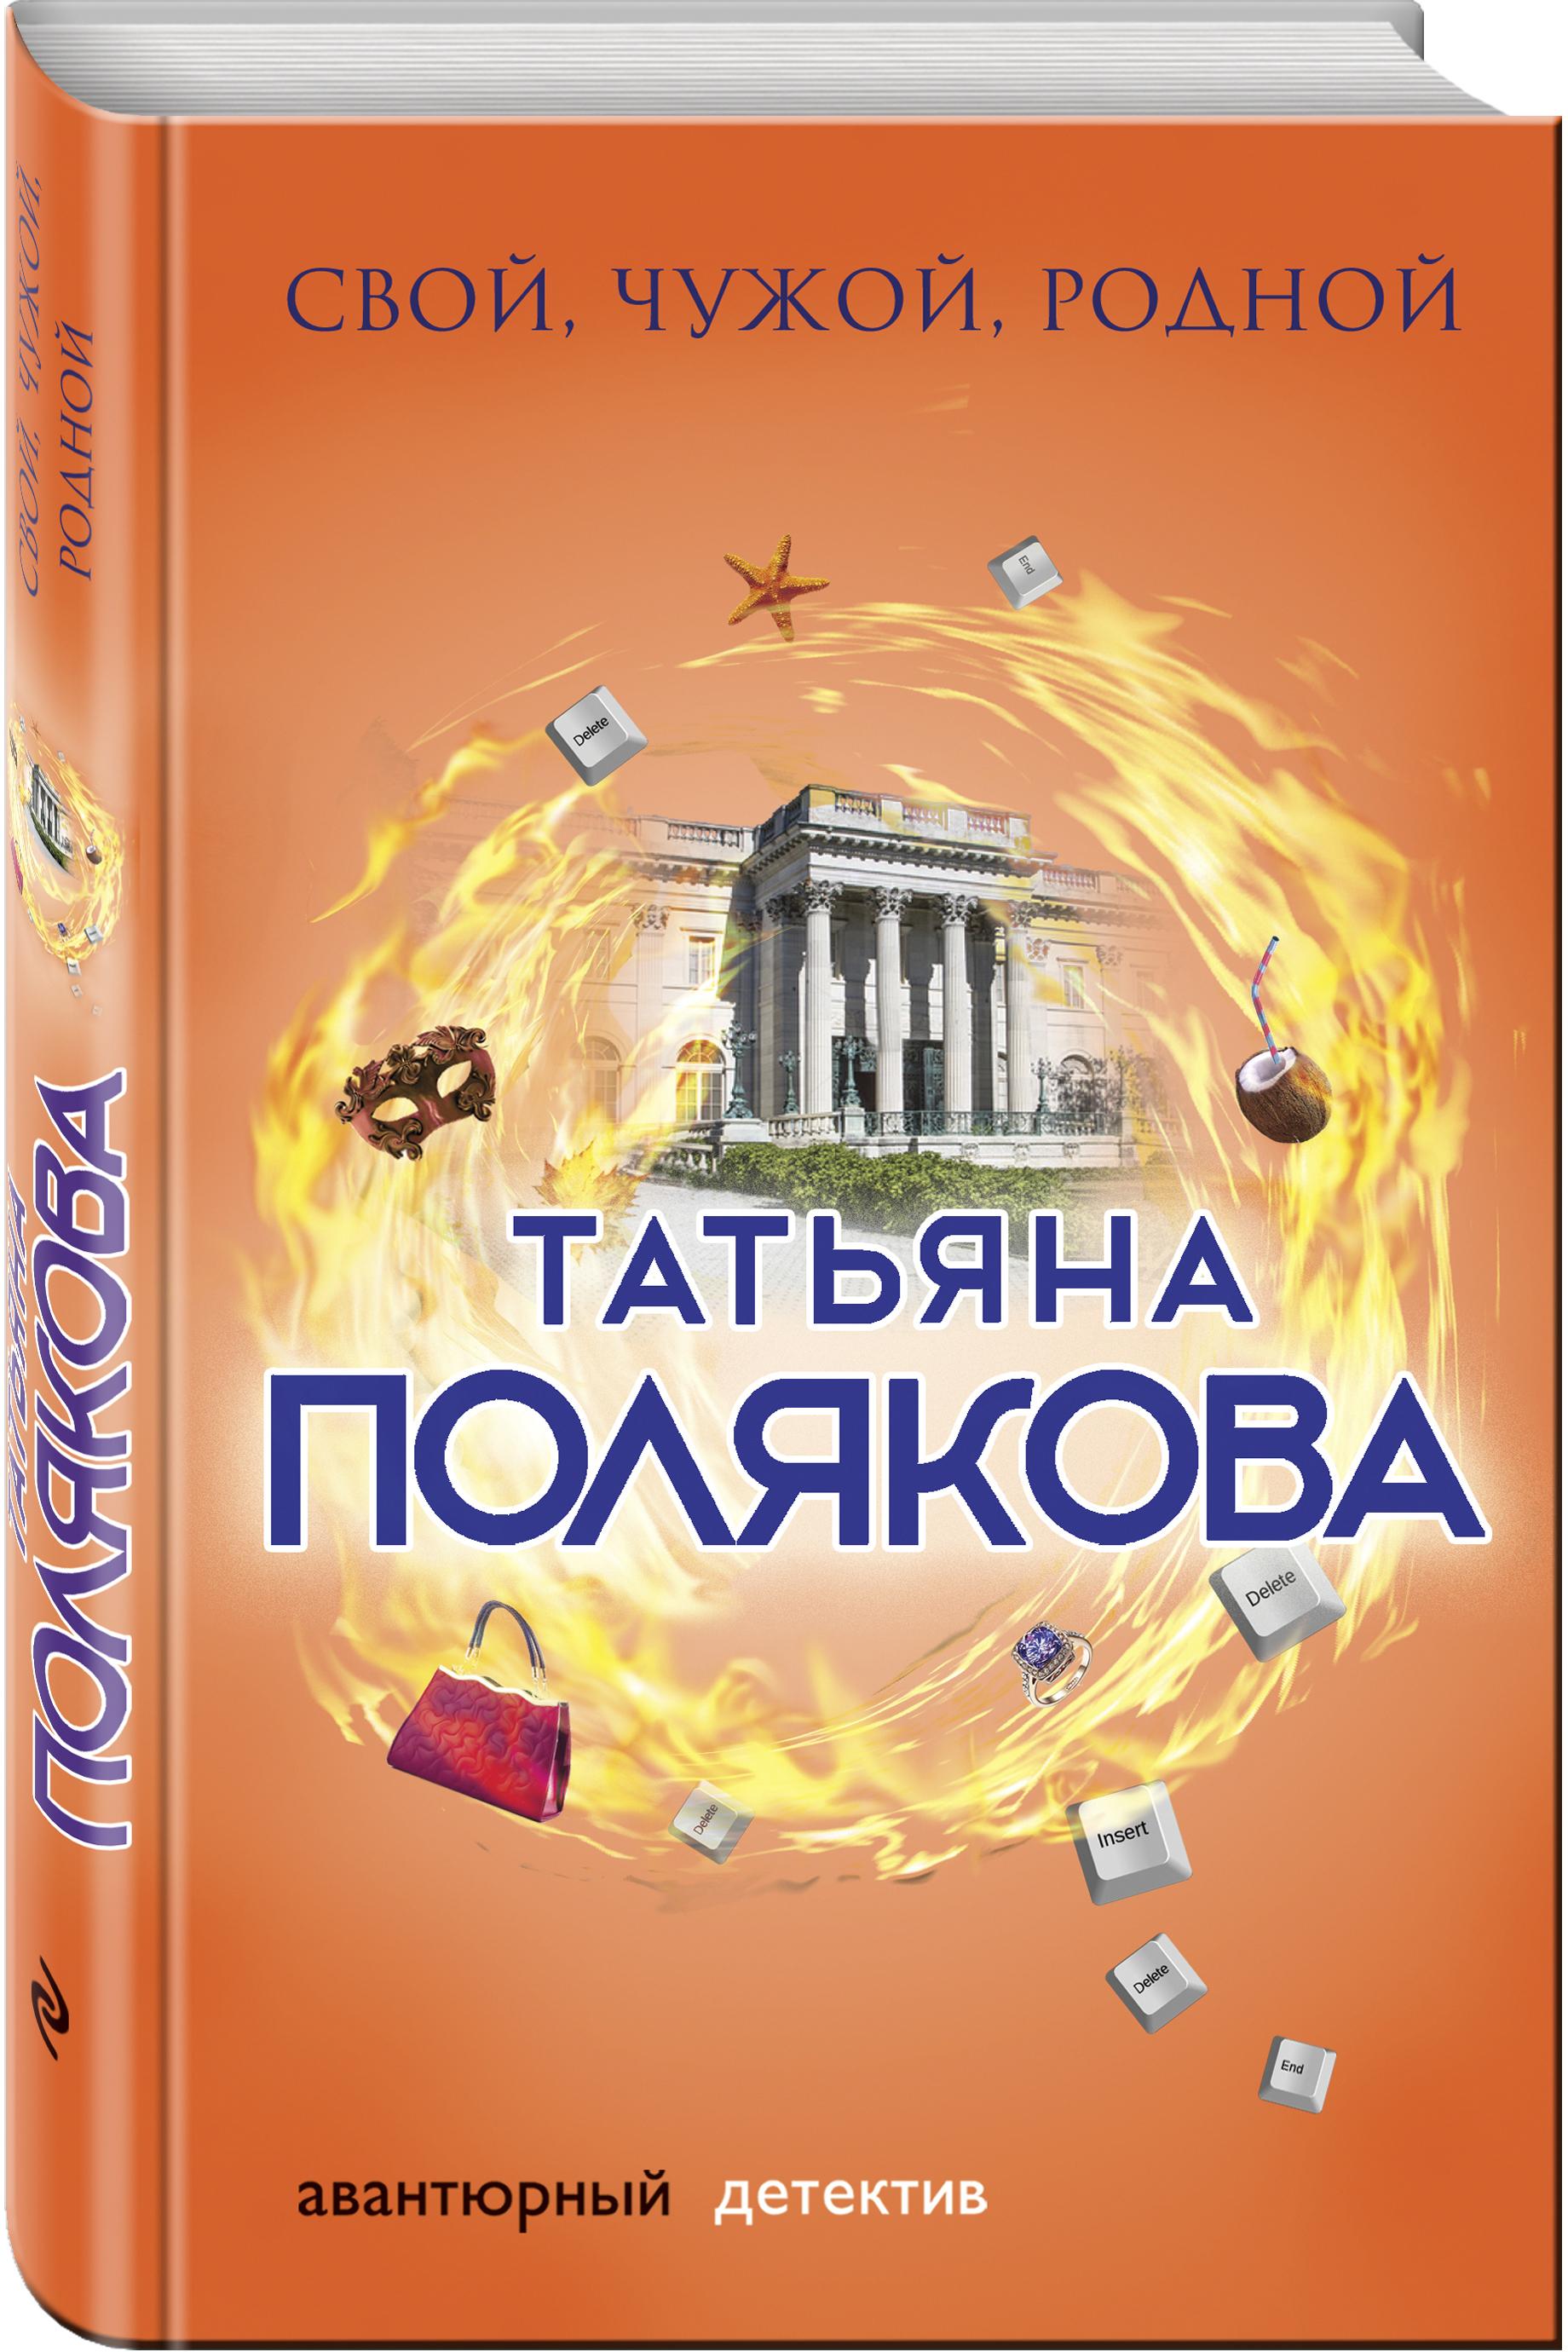 «Свой, чужой, родной», - головокружительное расследование в новой книге Татьяны Поляковой